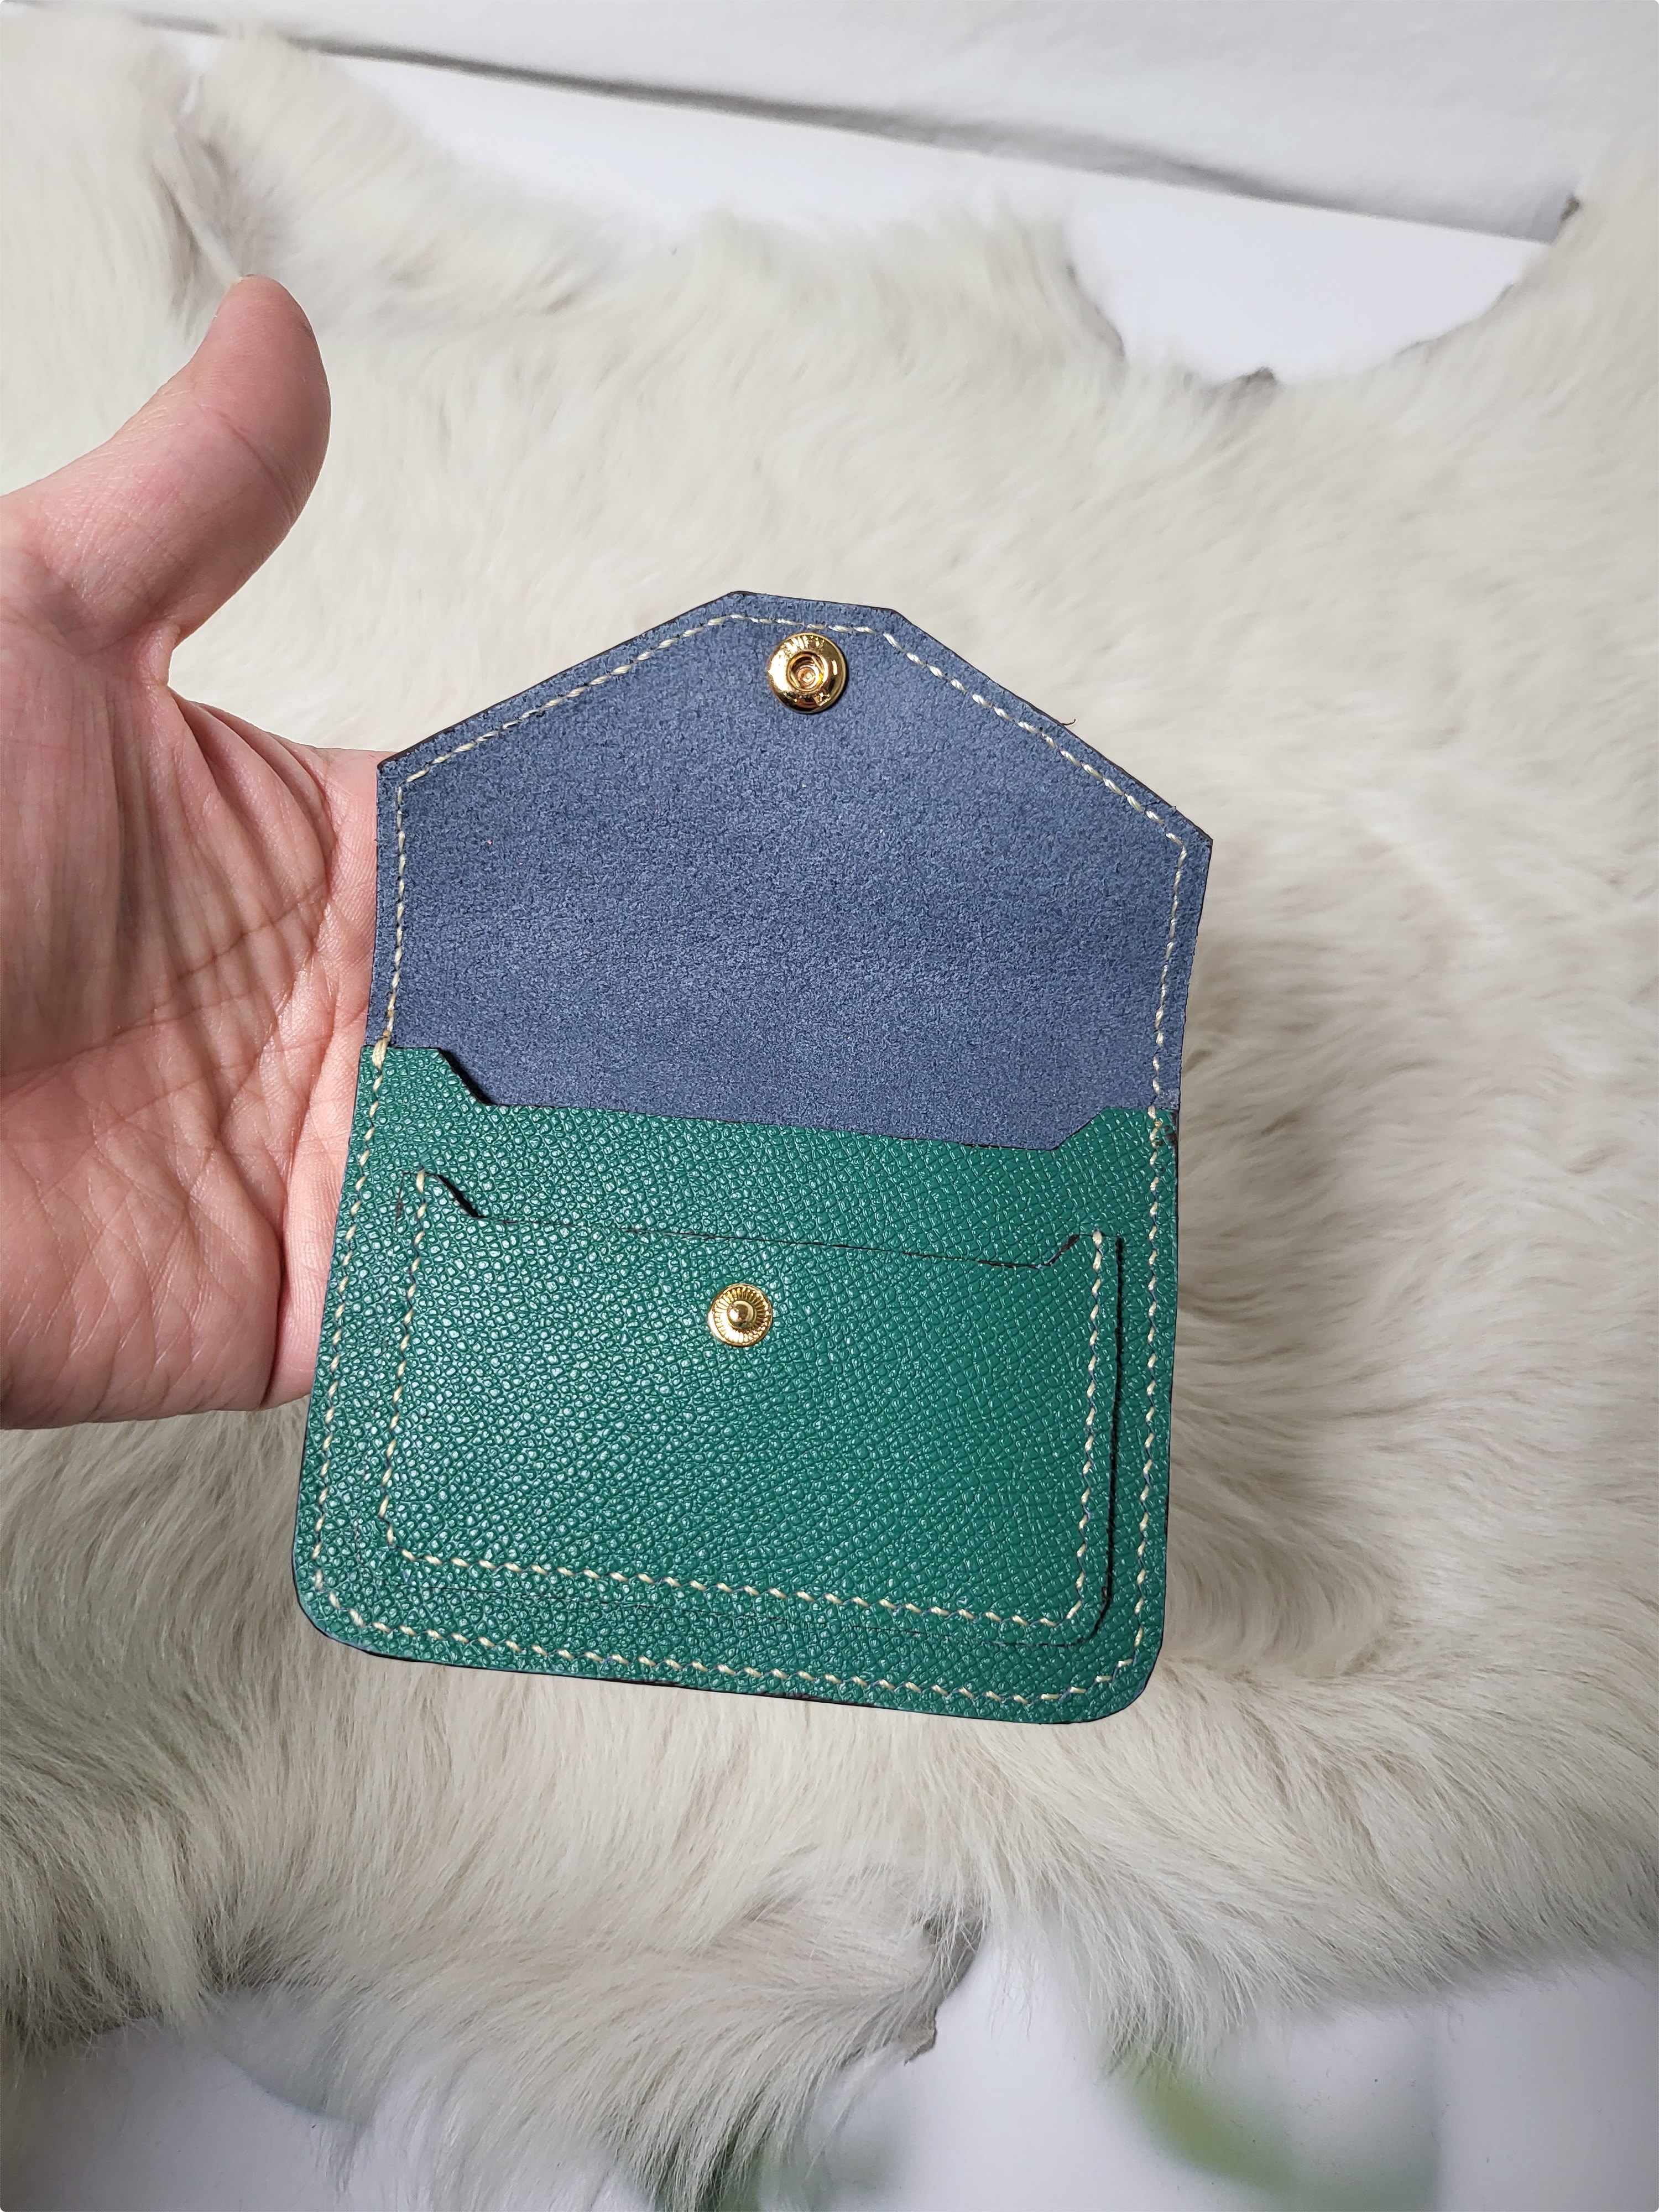 초록색 가죽으로 만든 카드지갑